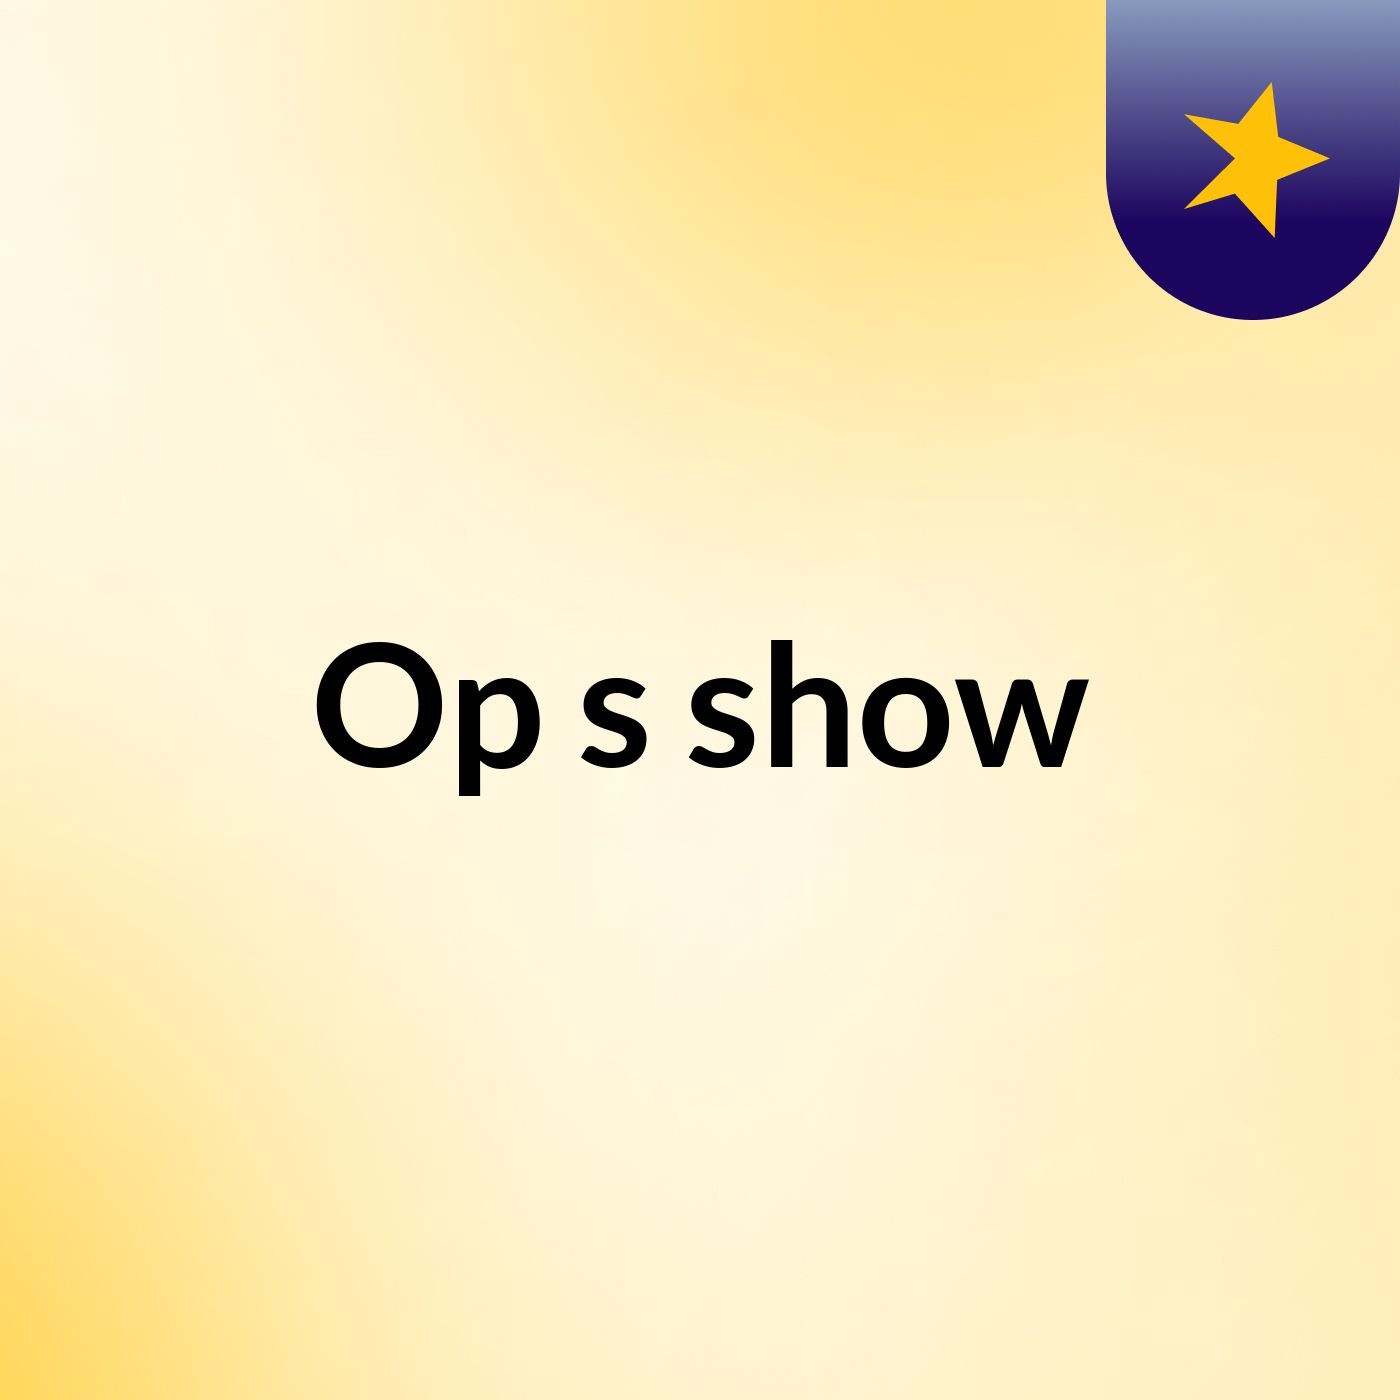 Op's show